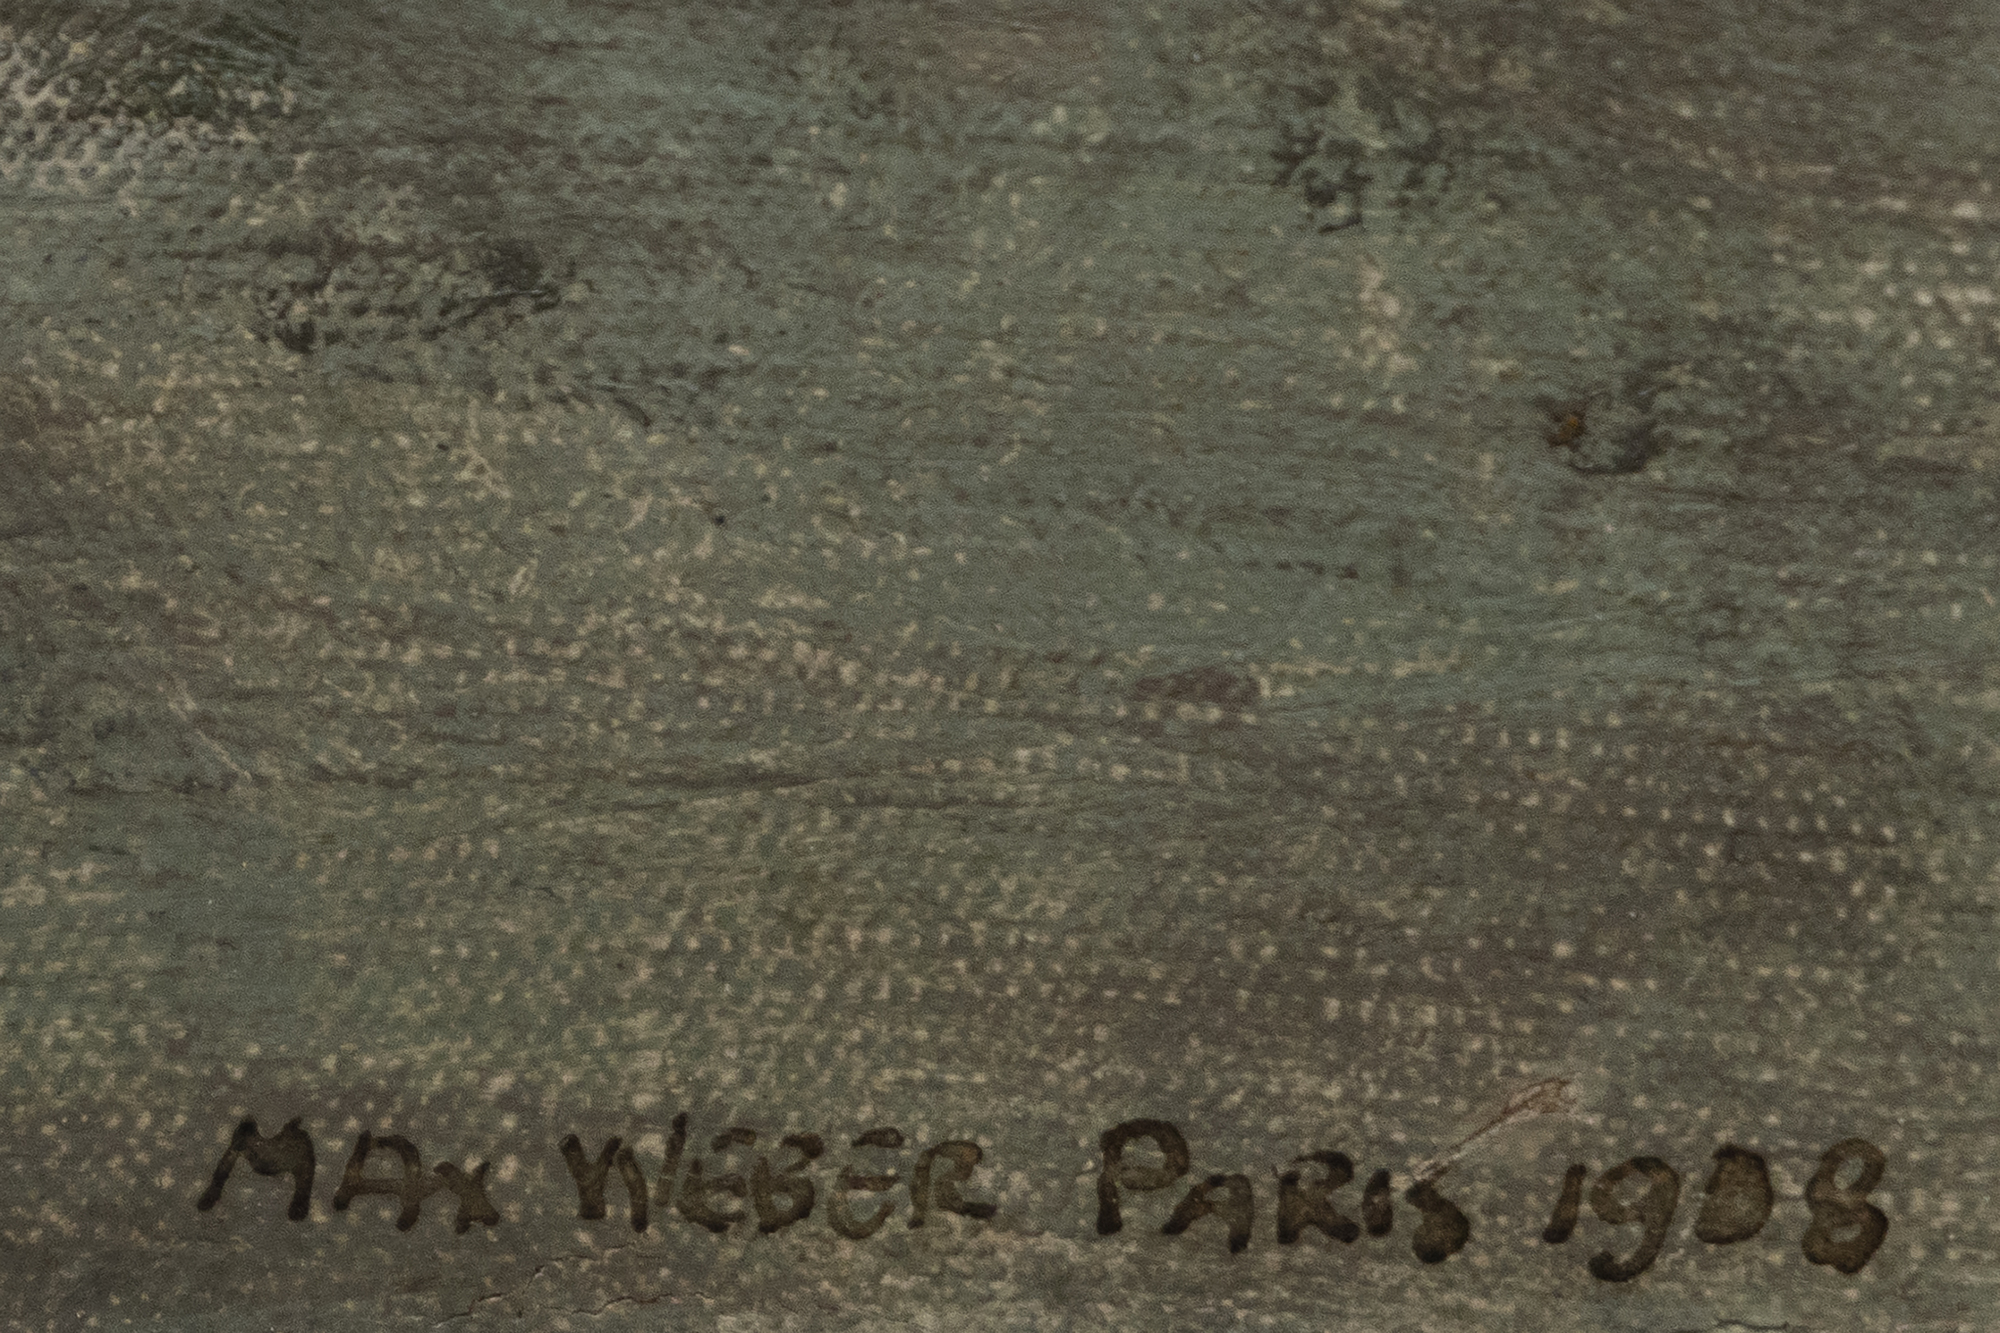 Max Weber s’installe à Paris en 1905, alors que la ville est l’épicentre de l’innovation artistique. Ses premières œuvres démontrent l’influence contemporaine de la palette de couleurs audacieuses du fauvisme et de la représentation fragmentée de la réalité du cubisme. Cependant, Weber ne s’est pas contenté d’imiter ces styles ; Il les a intégrées et réinterprétées pour créer quelque chose qui lui appartient. L’importance de Weber ne réside pas seulement dans ses œuvres abstraites, mais aussi dans son rôle de vecteur d’idées modernistes. Weber a joué un rôle crucial dans le dialogue transatlantique qui a contribué à façonner le cours de l’art américain au XXe siècle. Ses représentations de figures féminines présentent une synthèse de l’abstrait et du figuratif, capturant l’essence de ses sujets tout en rompant avec les œuvres figuratives traditionnelles.